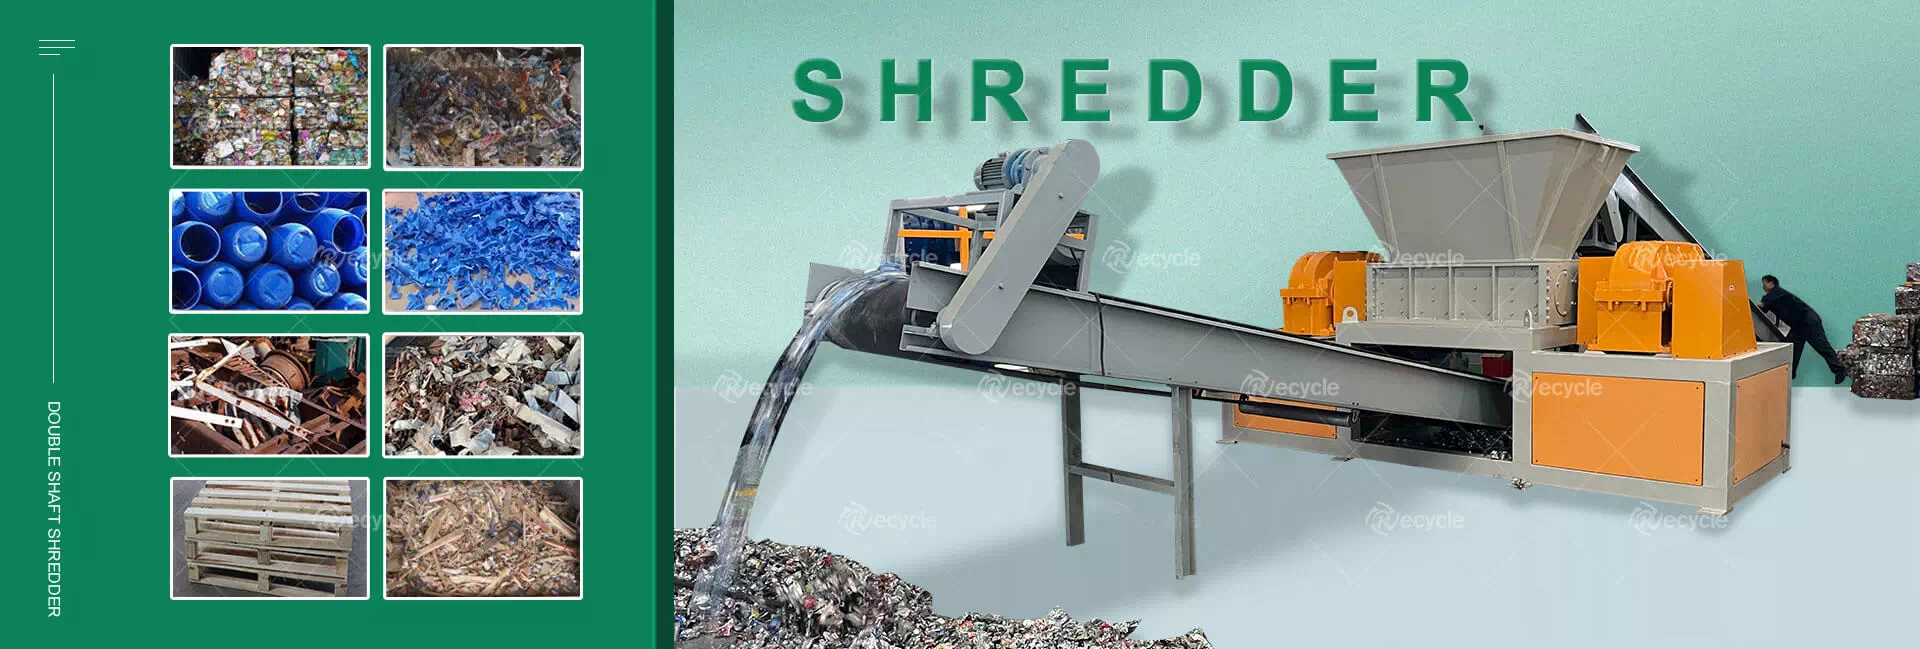 Double Shaft Shredder